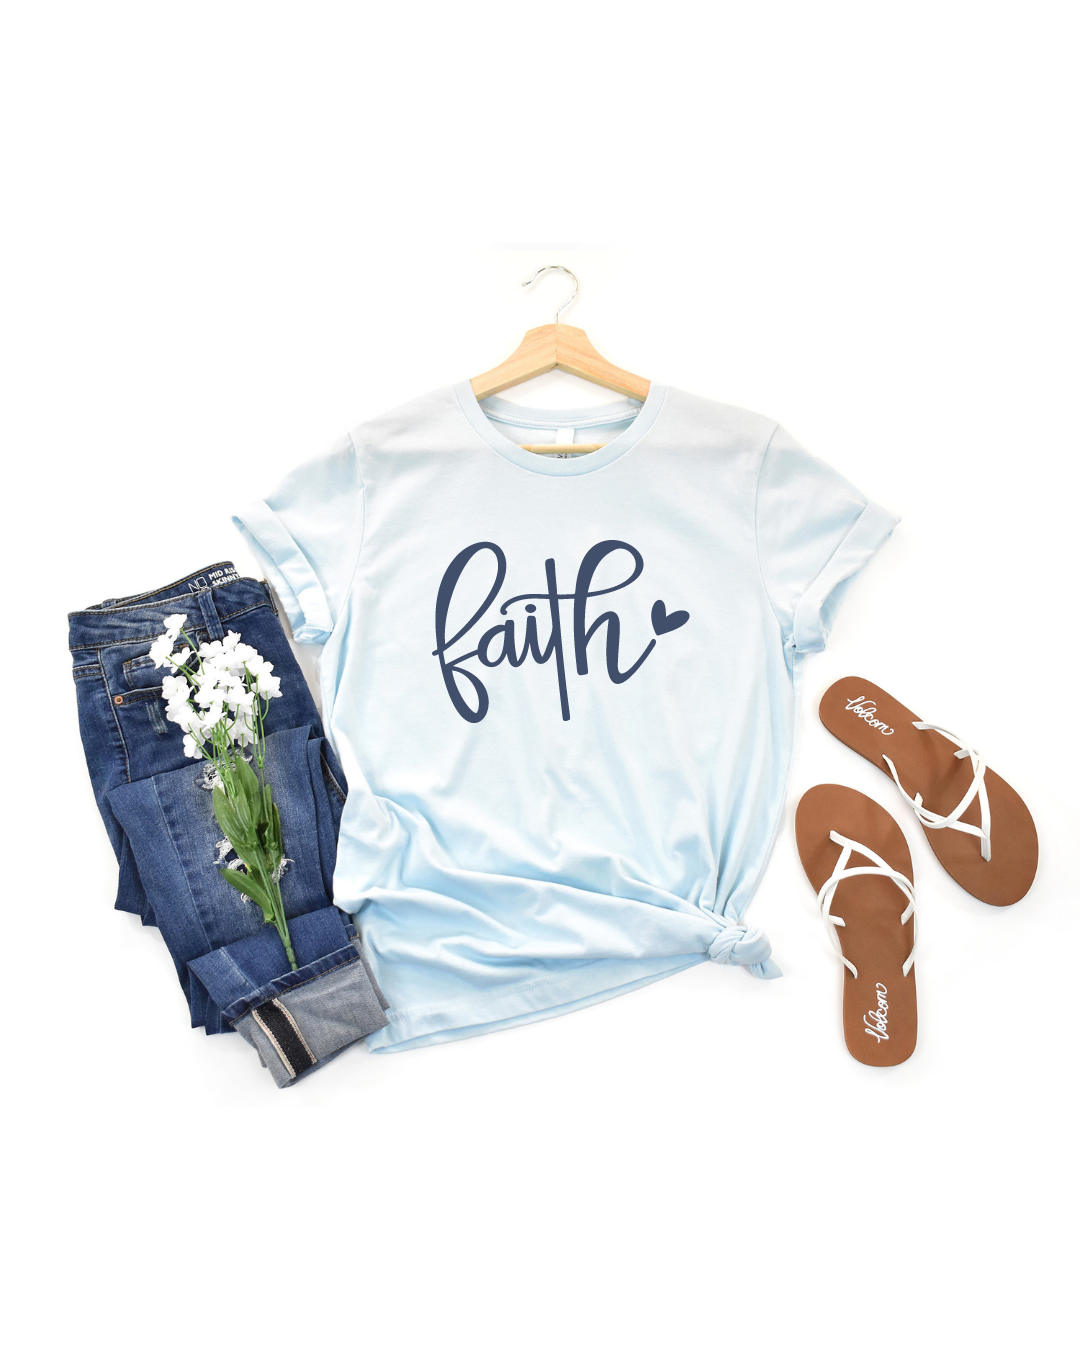 603-blue-faith-tshirt-17090498937703.png